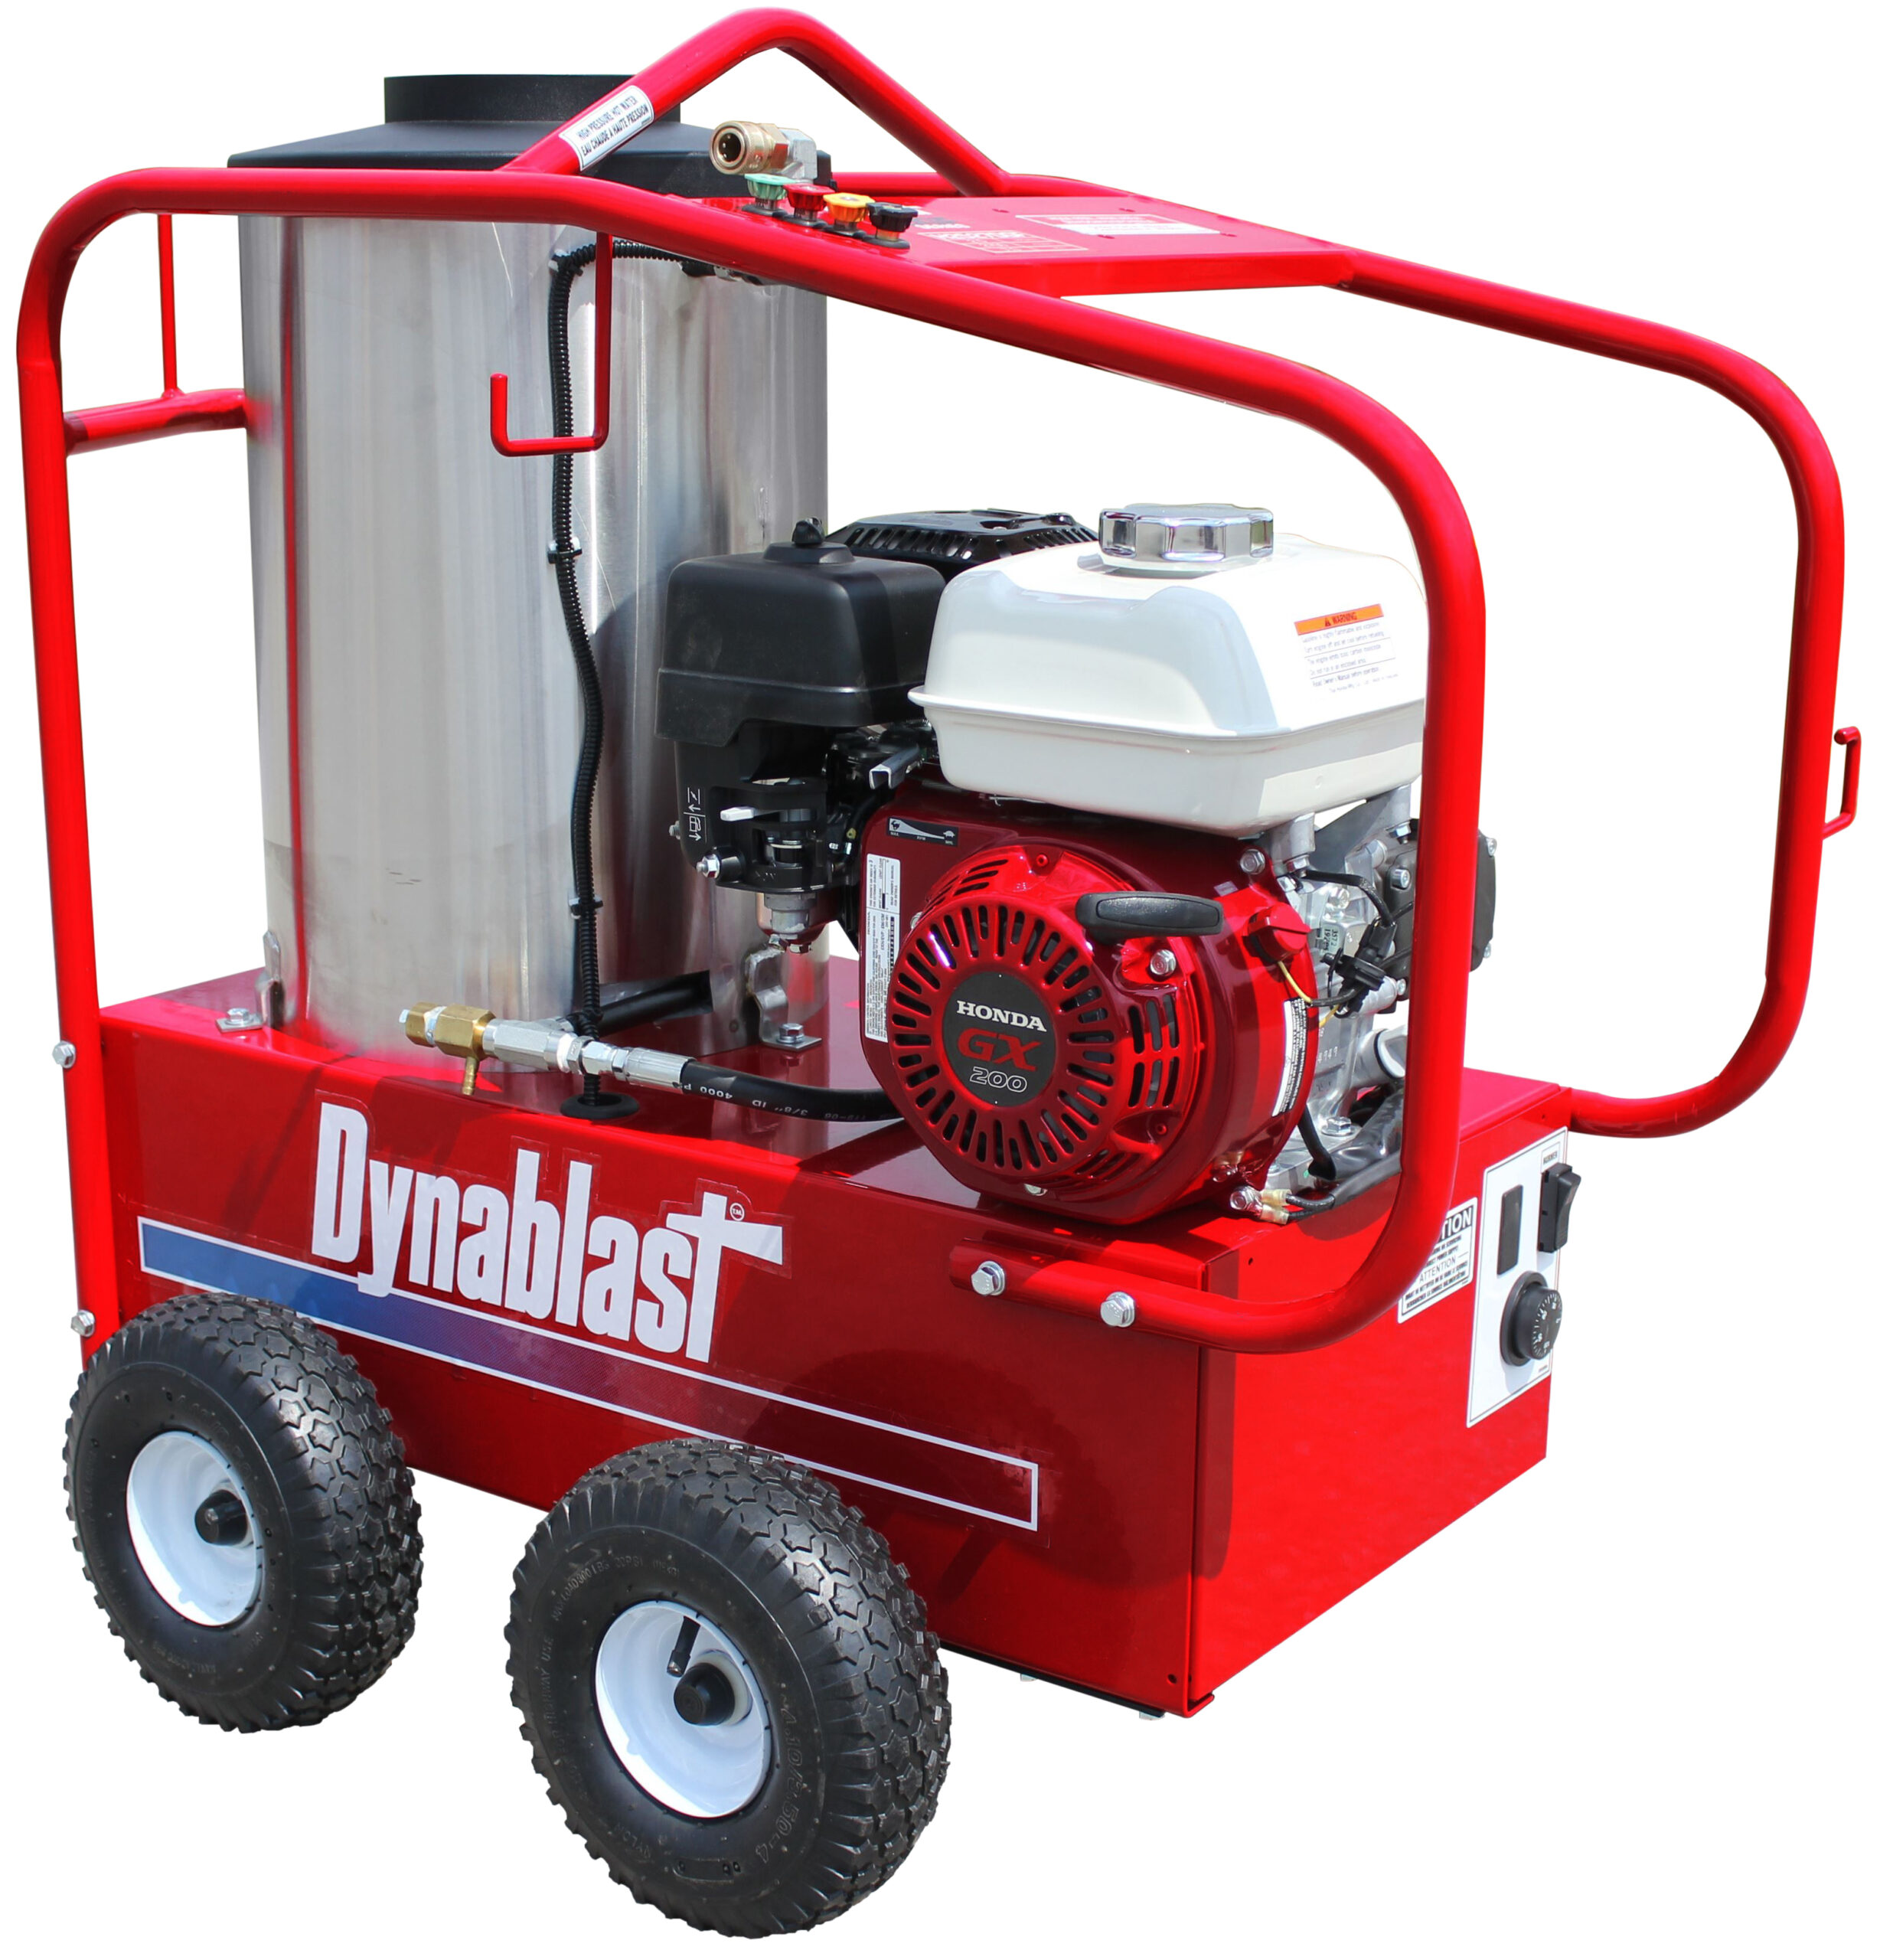 Dynablast H3025DGF Hot Water Pressure Washer